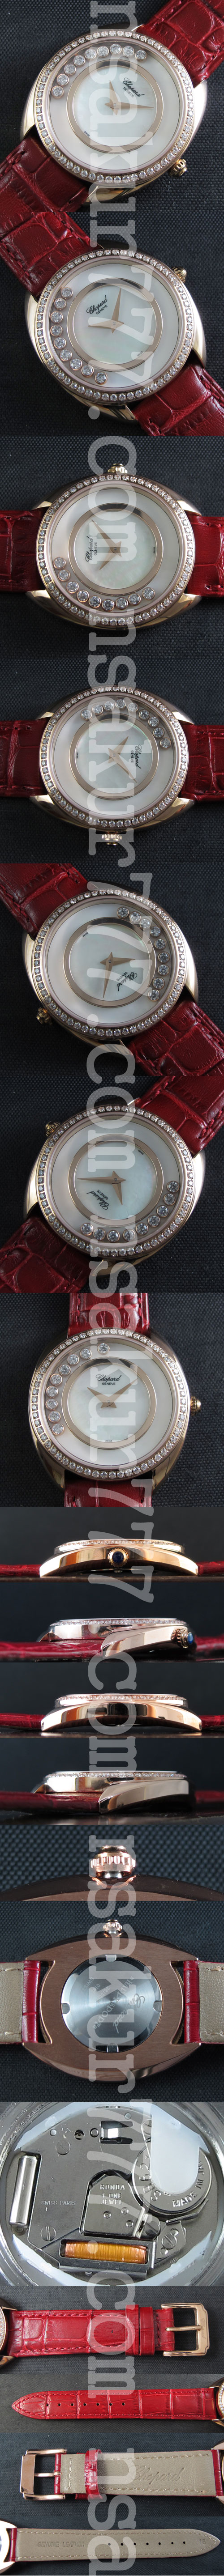 電池式レディース腕時計 Chopard ハッピー クォーツムーブメント 34㎜ 全面ダイヤ 赤革ベルト